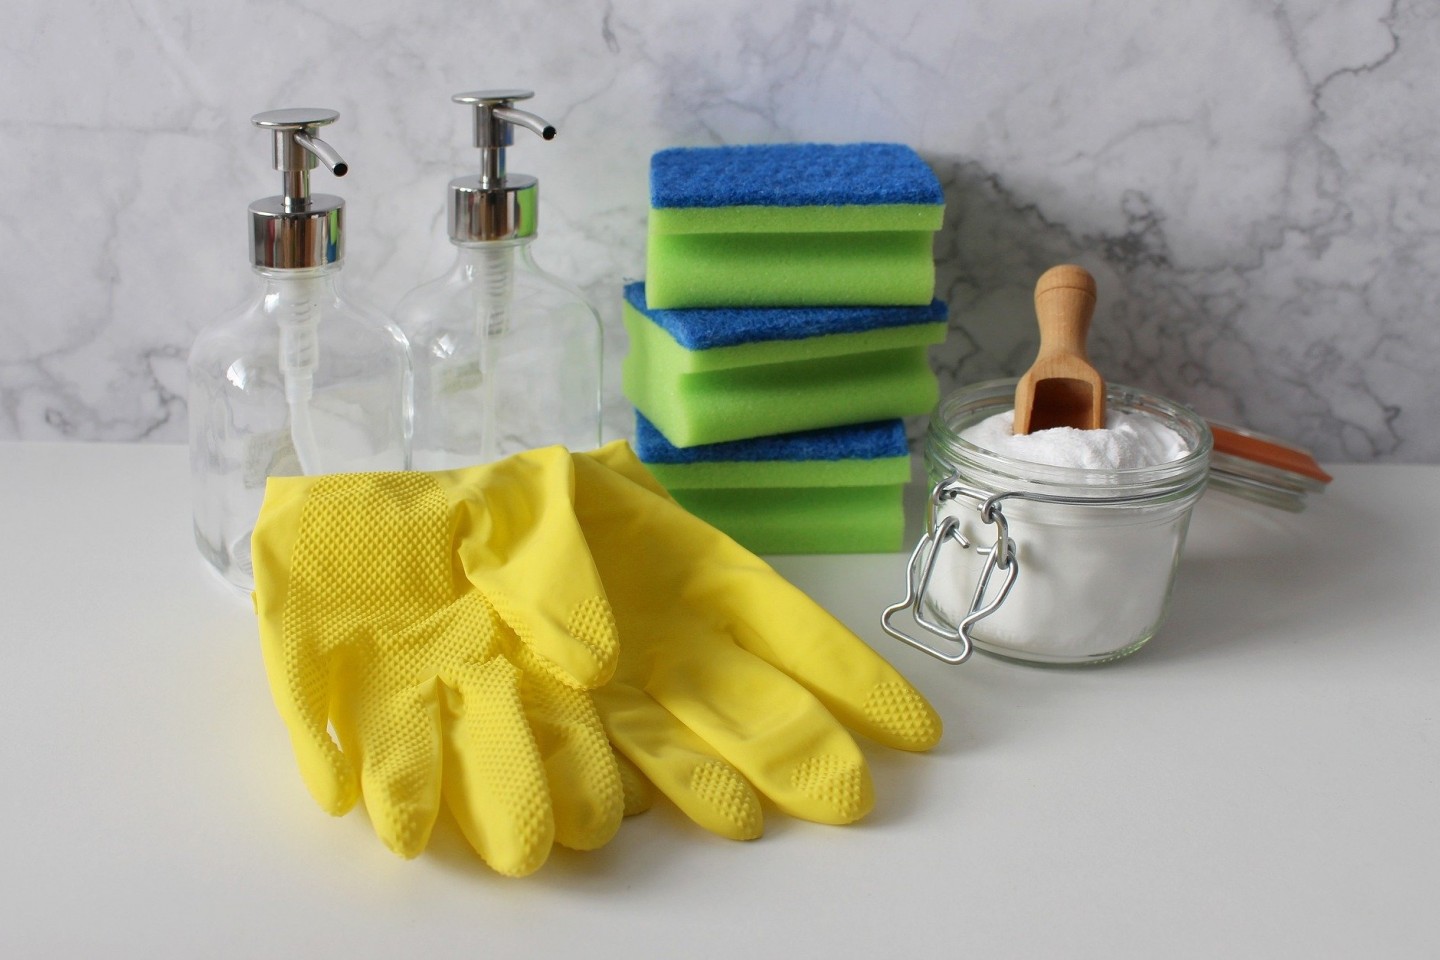 Hausmittel helfen beim Putzen 